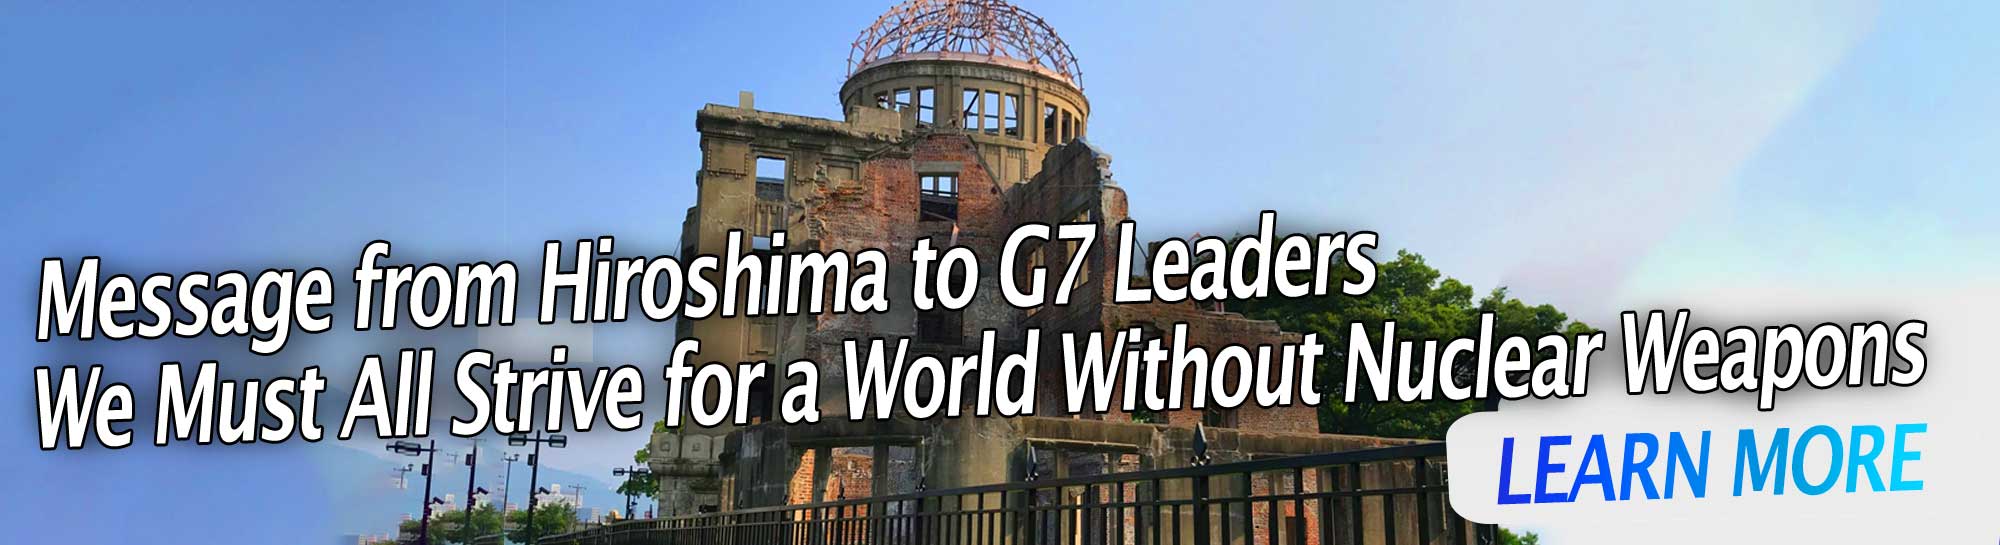 Hirosima üzenete a G7 vezetőinek: Mindannyiunknak egy atomfegyver nélküli világért kell törekednünk